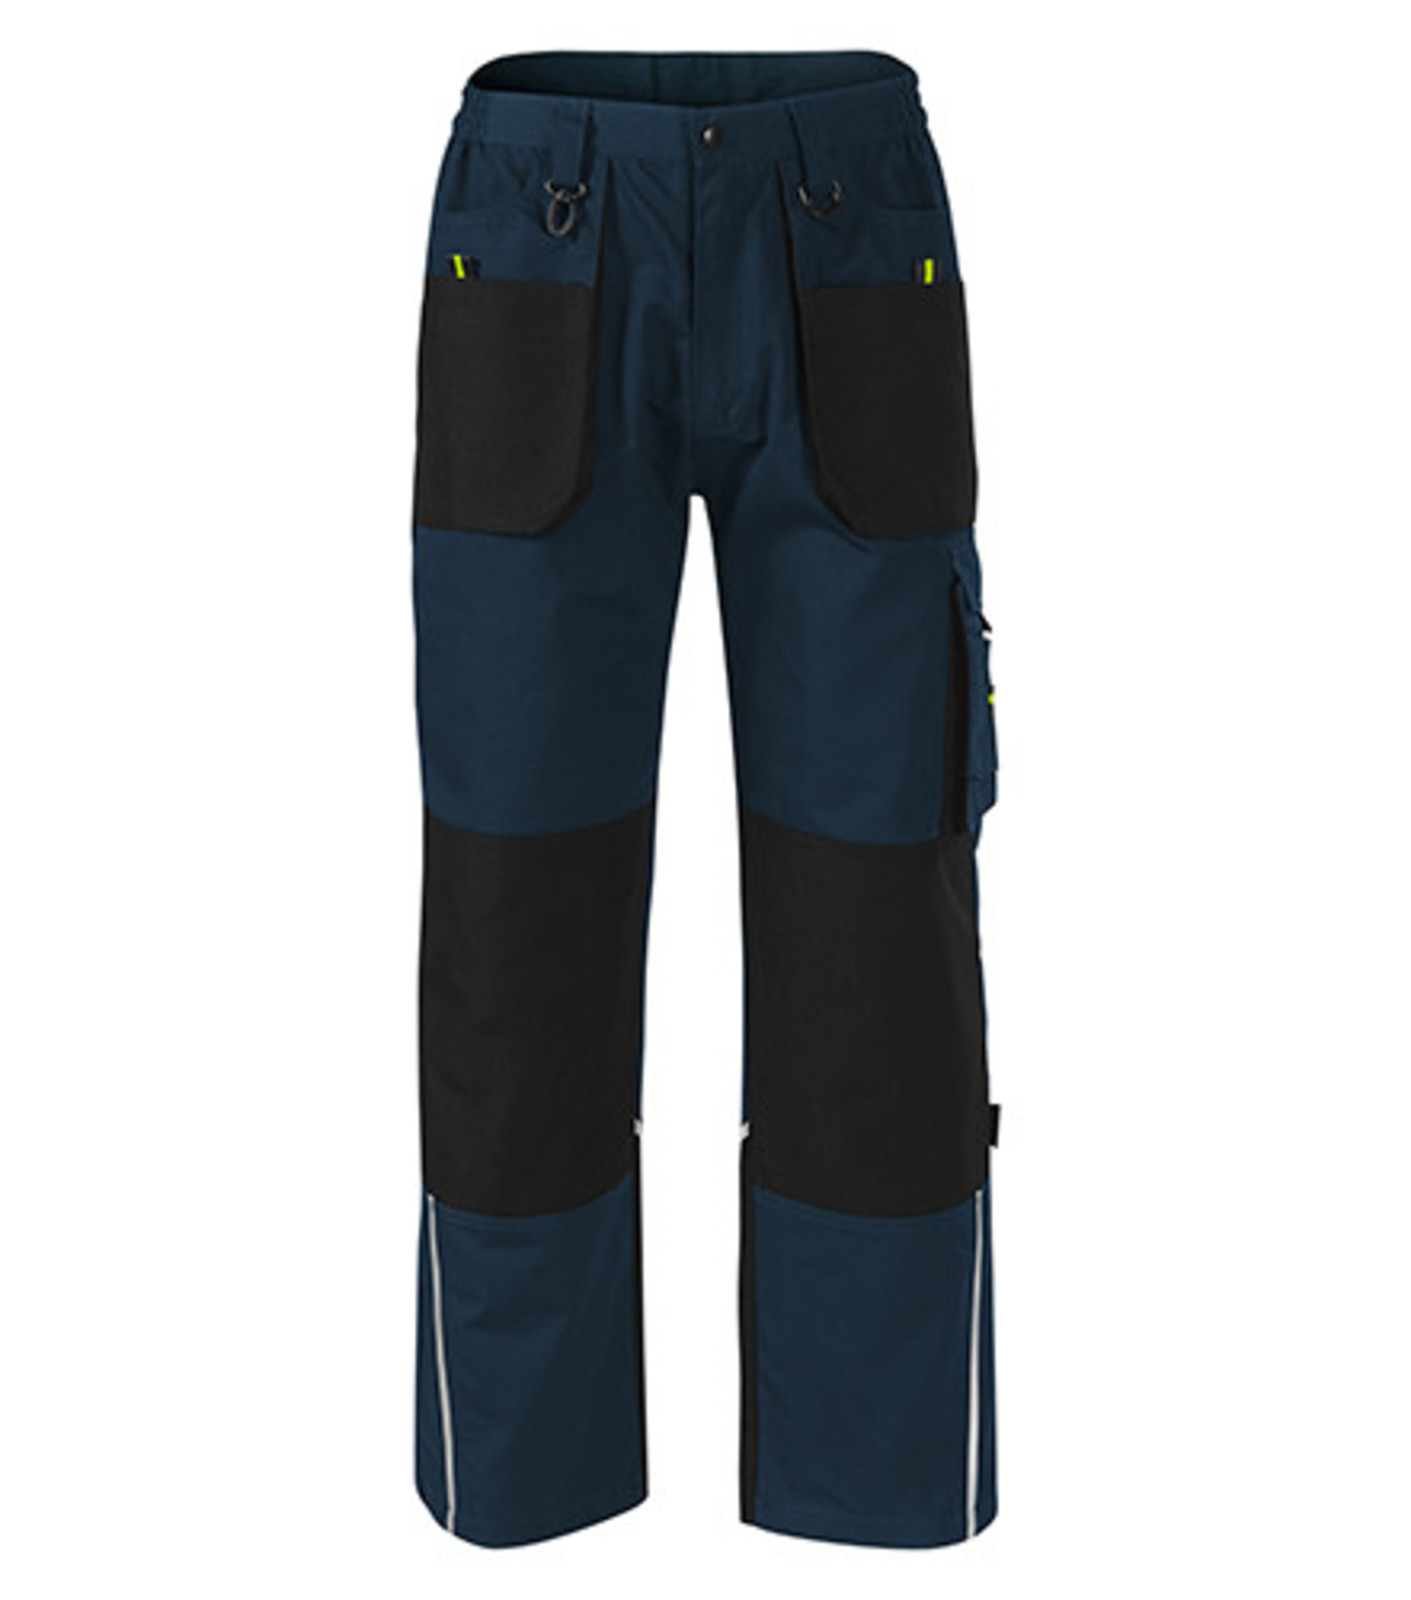 Pánske nohavice Adler Ranger W03 - veľkosť: 44-46, farba: tmavo modrá